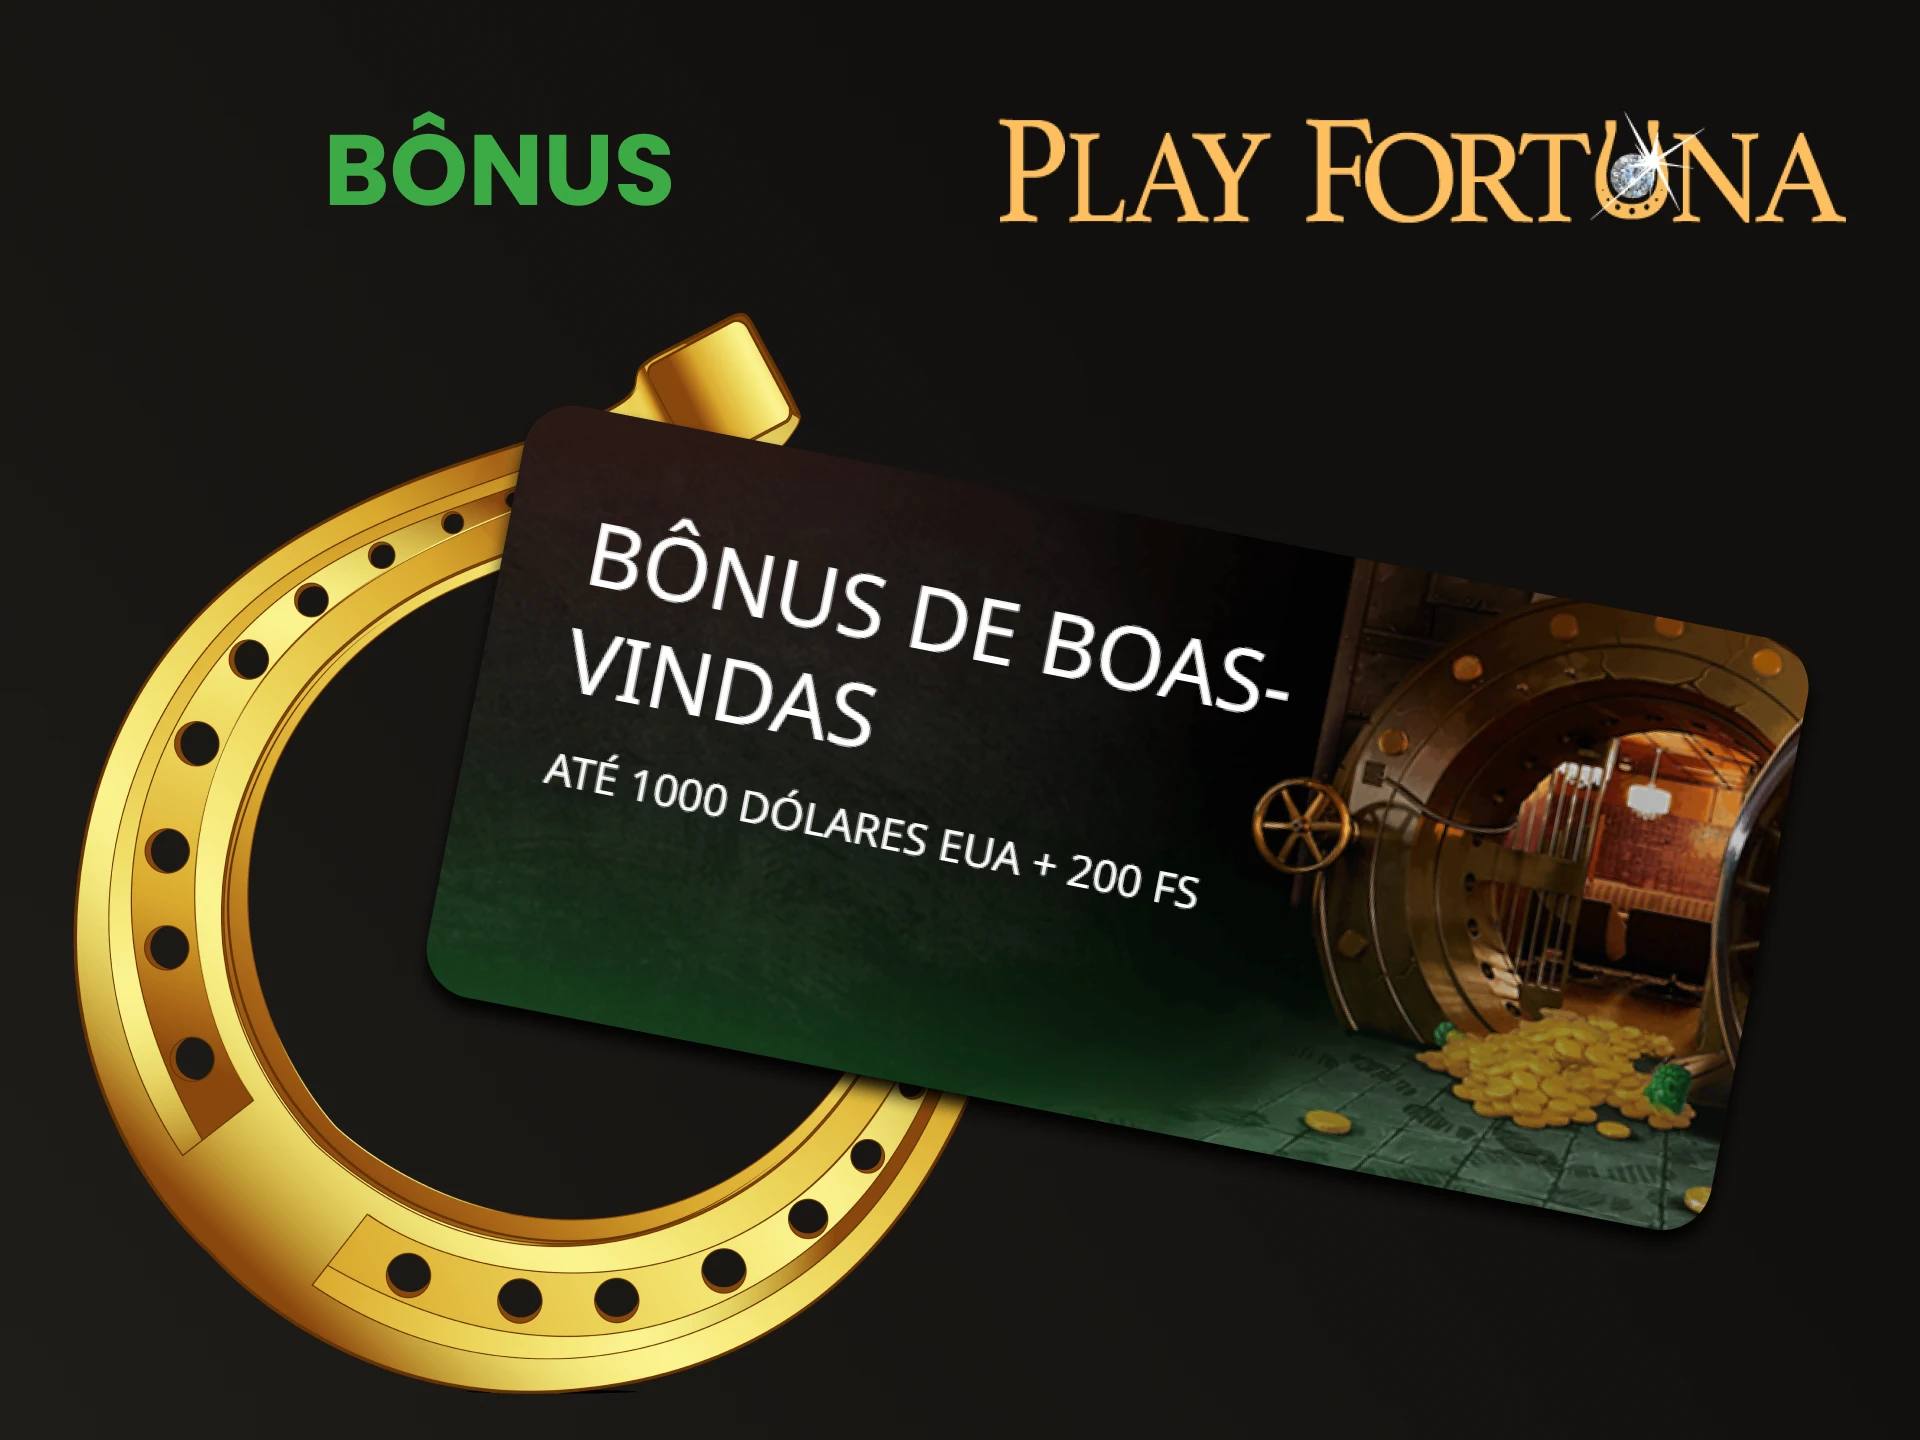 Play Fortuna oferece bônus por jogar vídeo pôquer.